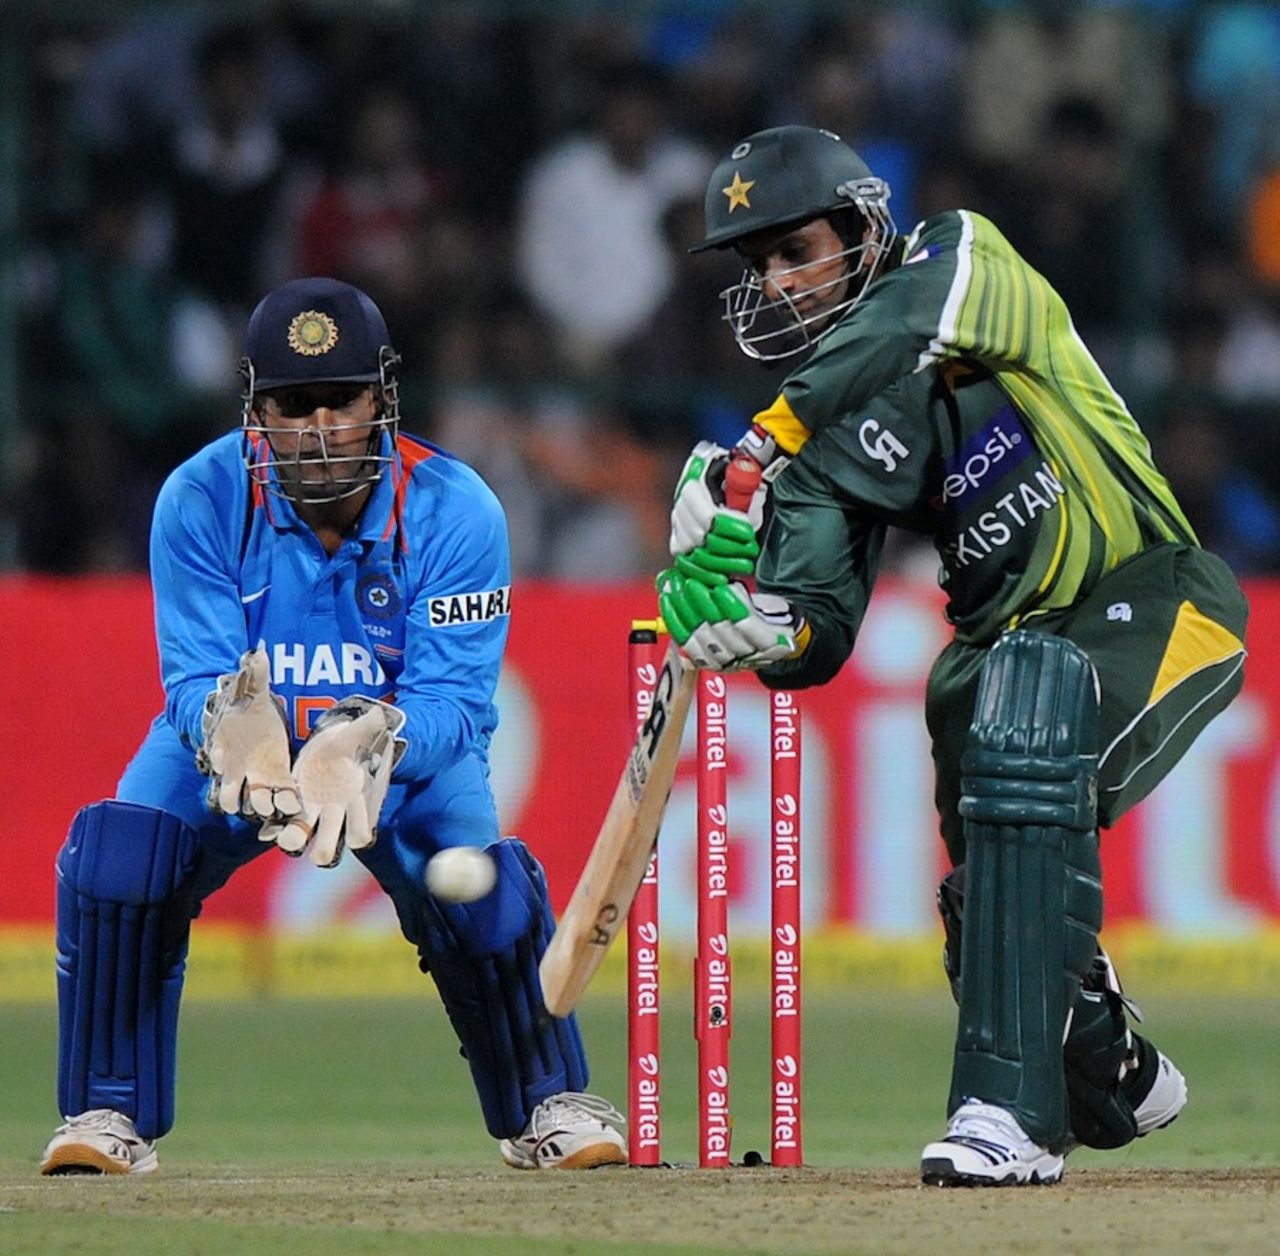 Shoaib Malik drives one square on the off, India v Pakistan, 1st T20, Bangalore, December 25, 2012